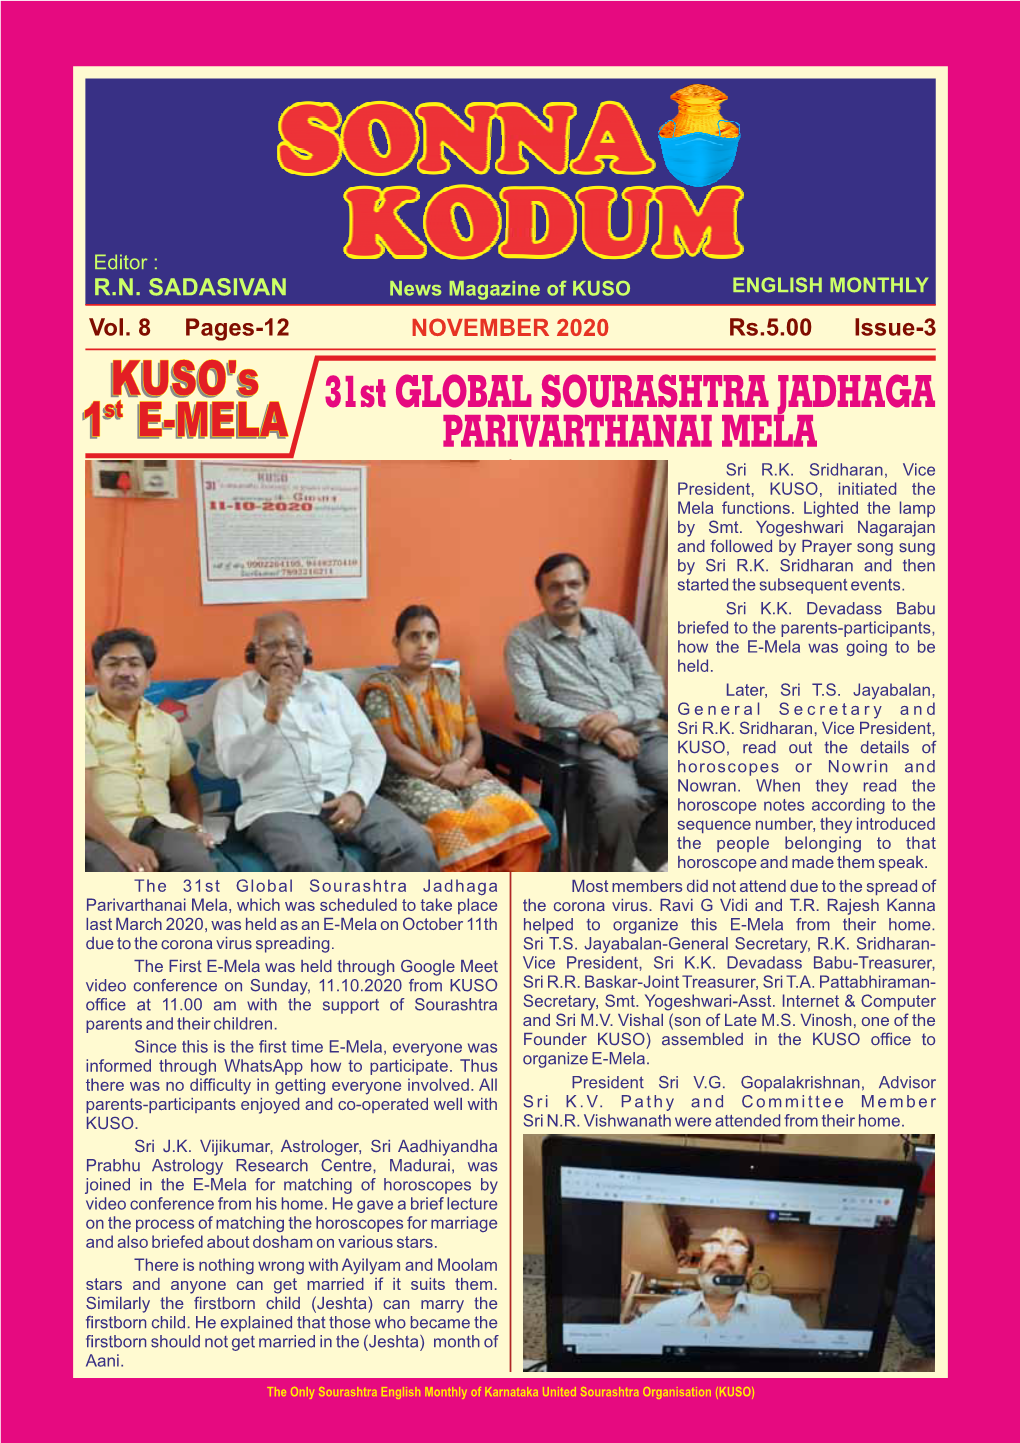 NOVEMBER 2020 Rs.5.00 Issue-3 KUSO'skuso's 31St GLOBAL SOURASHTRA JADHAGA 11Stst E-MELA E-MELA PARIVARTHANAI MELA Sri R.K